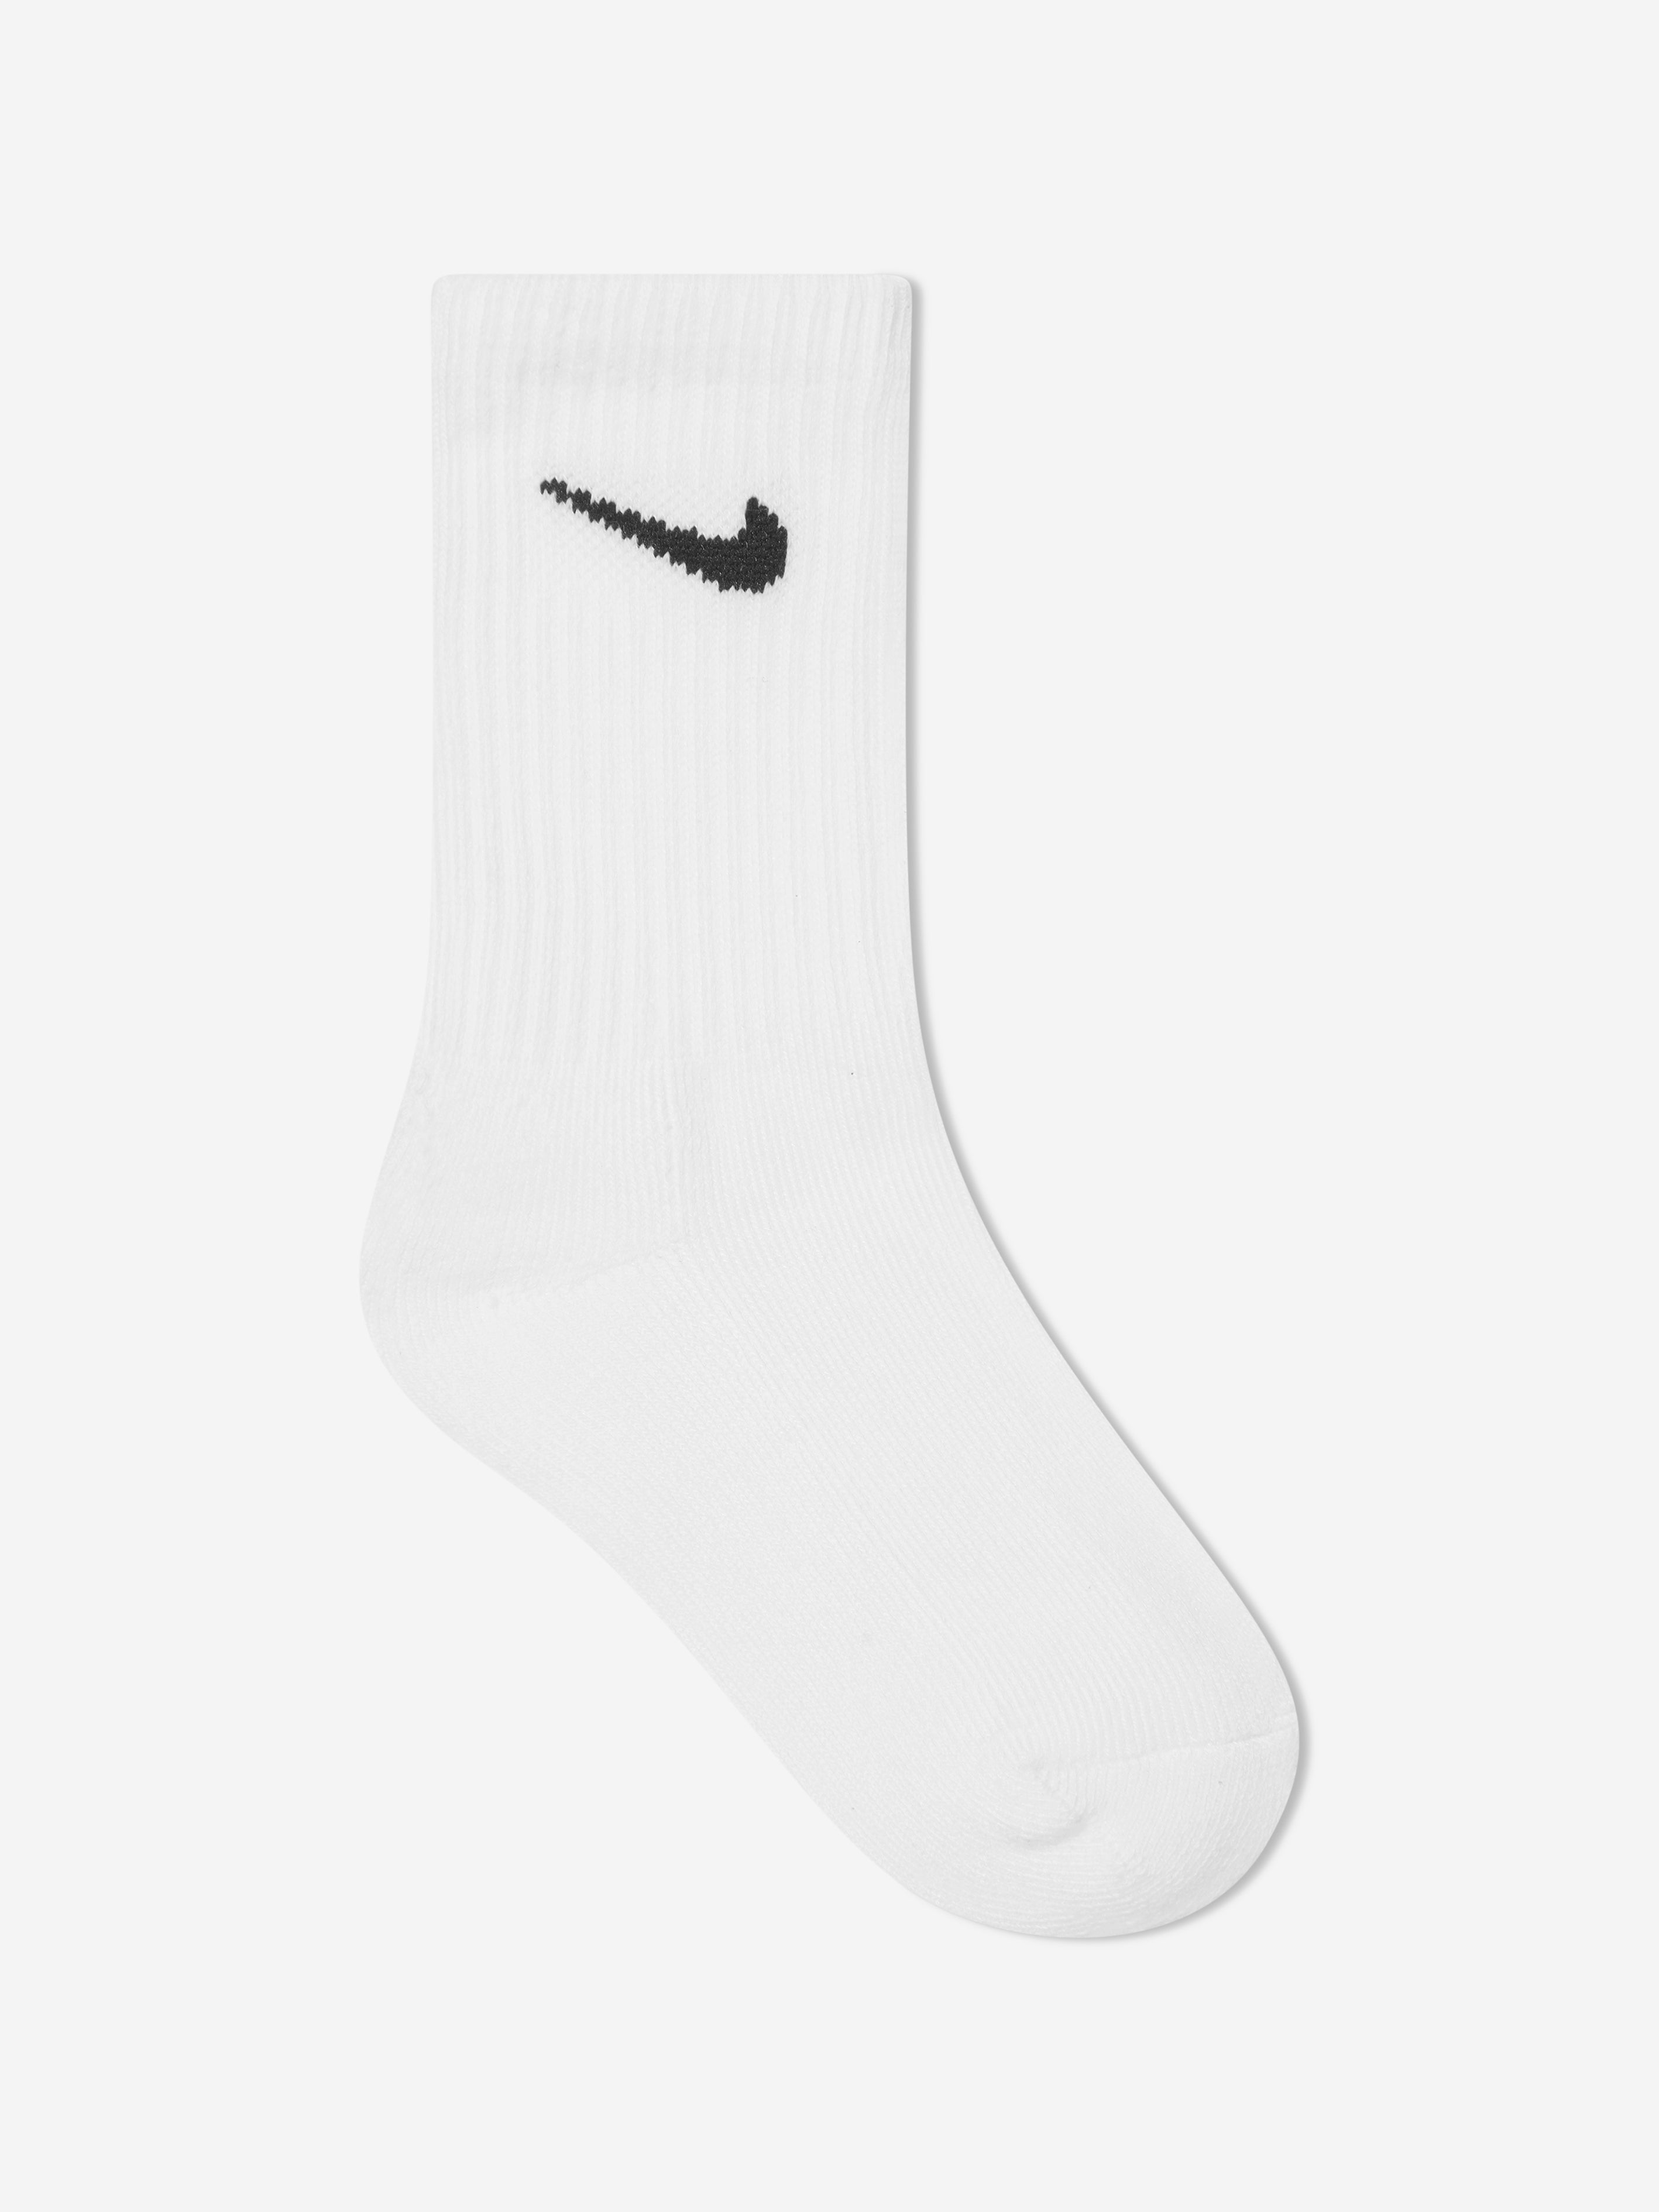 Nike Three Pack Socks White